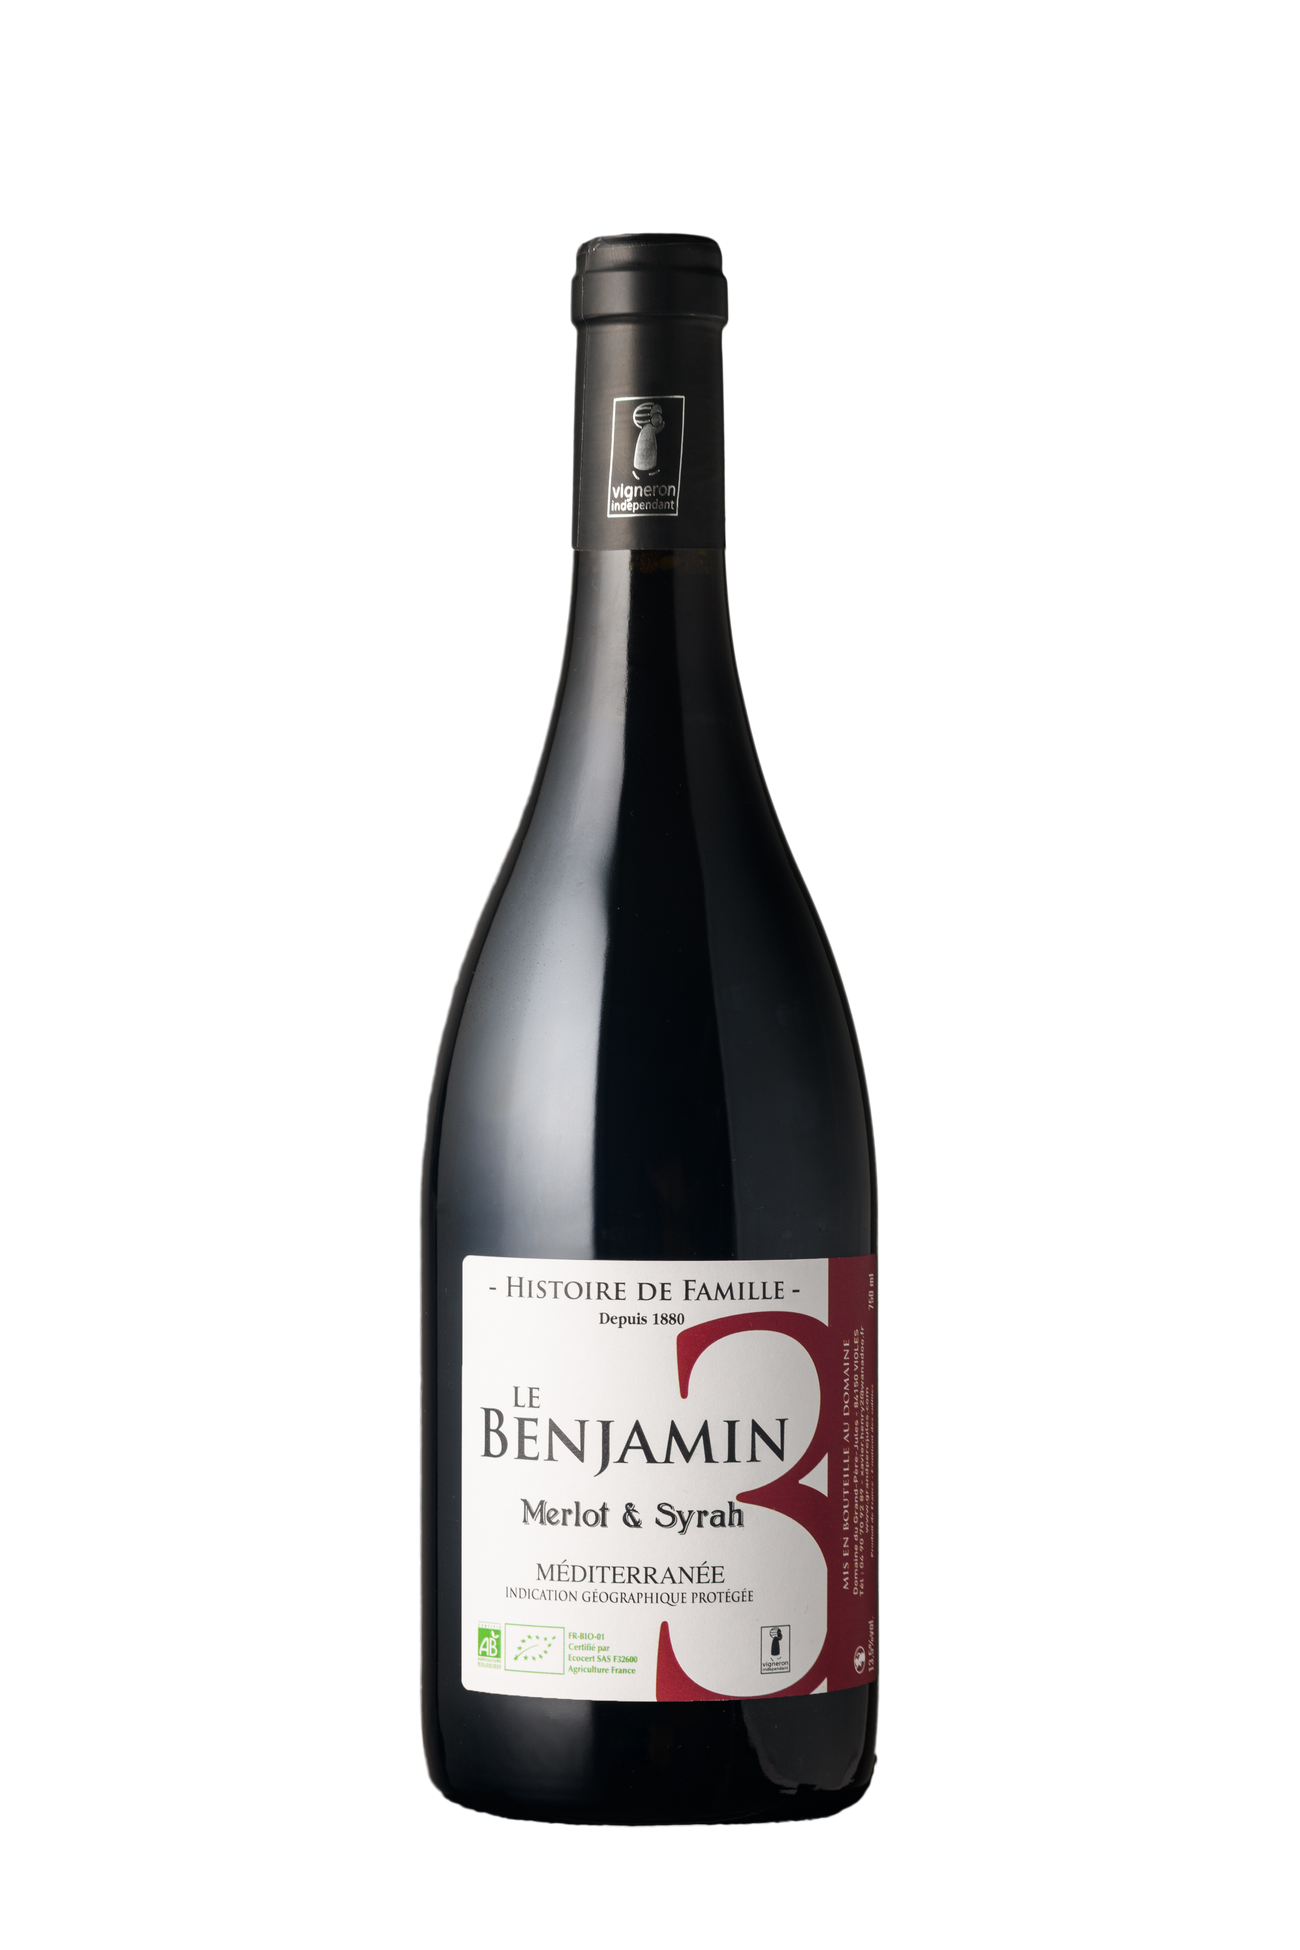 Le Benjamin | Vin rouge bio IGP Méditerranée (2019)